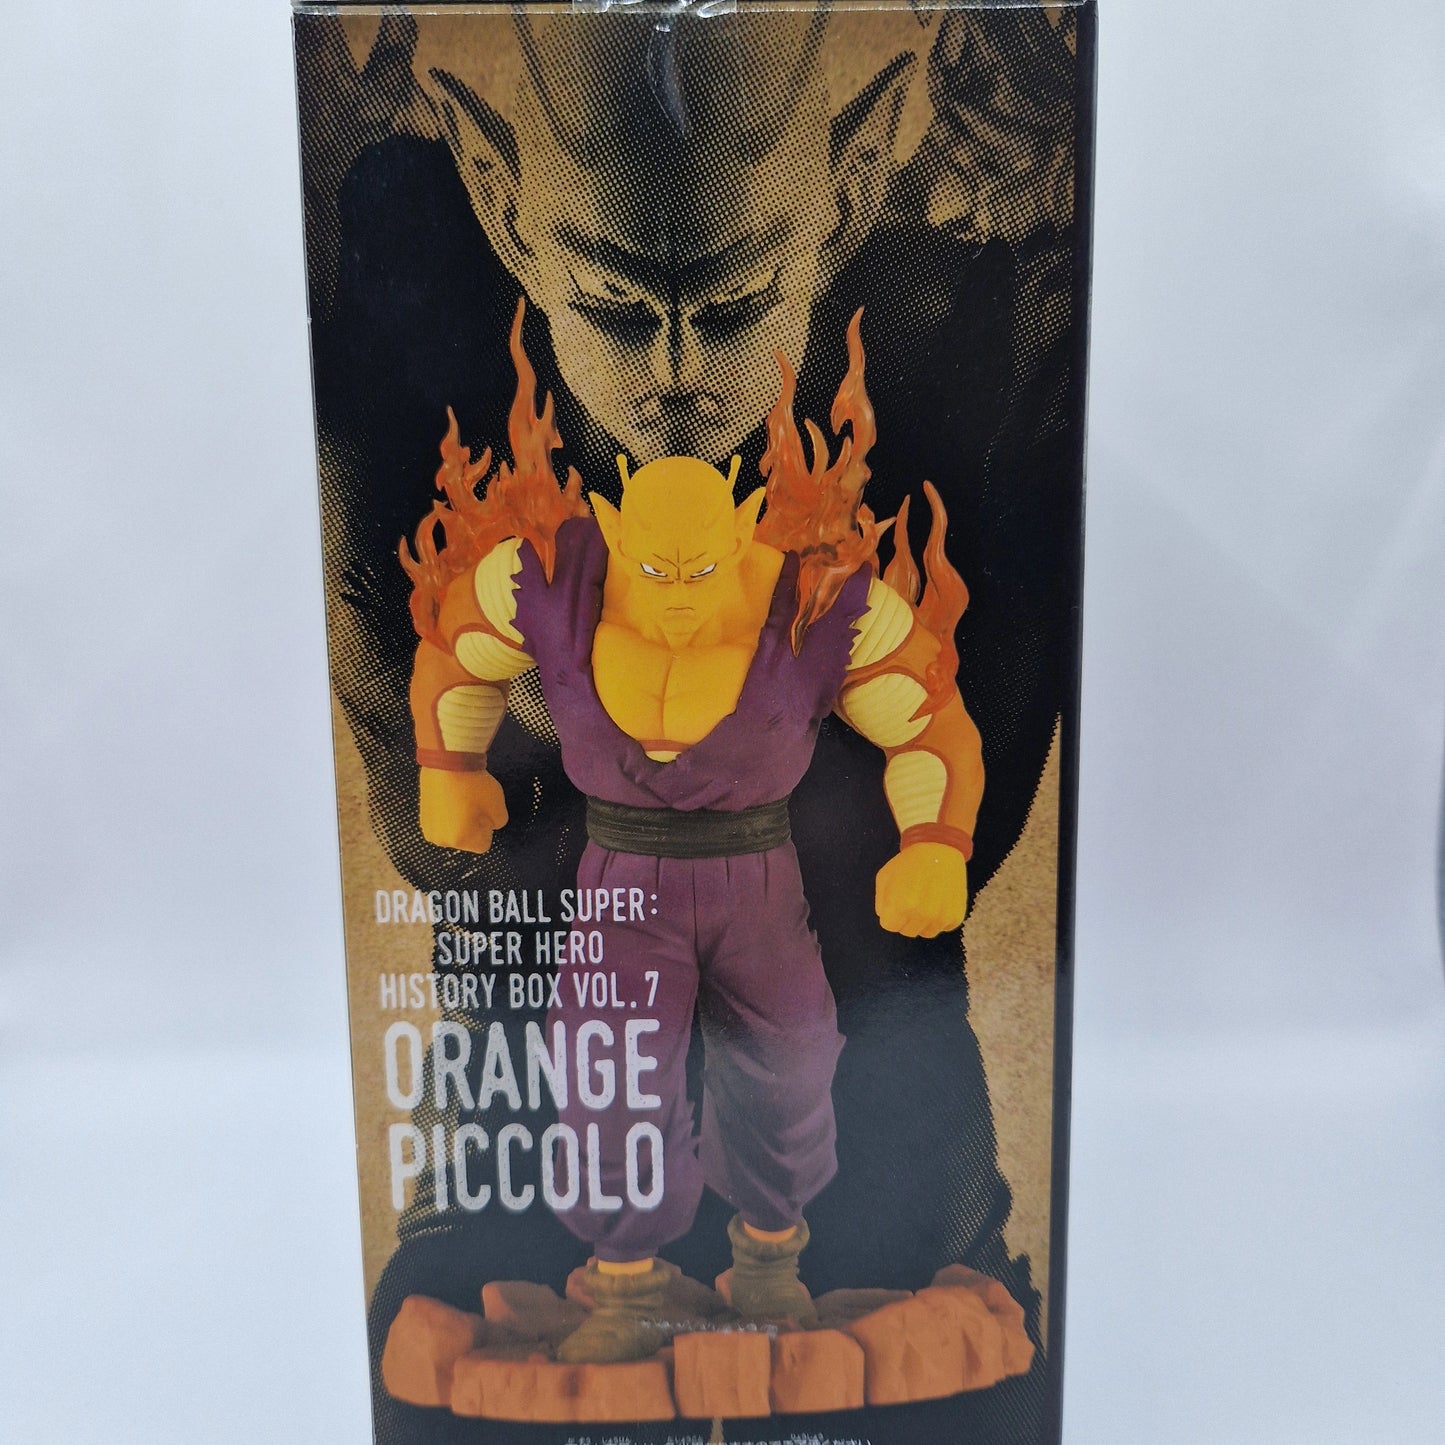 DRAGON BALL SUPER : SUPER HERO - Orange Piccolo - History Box Vol 7